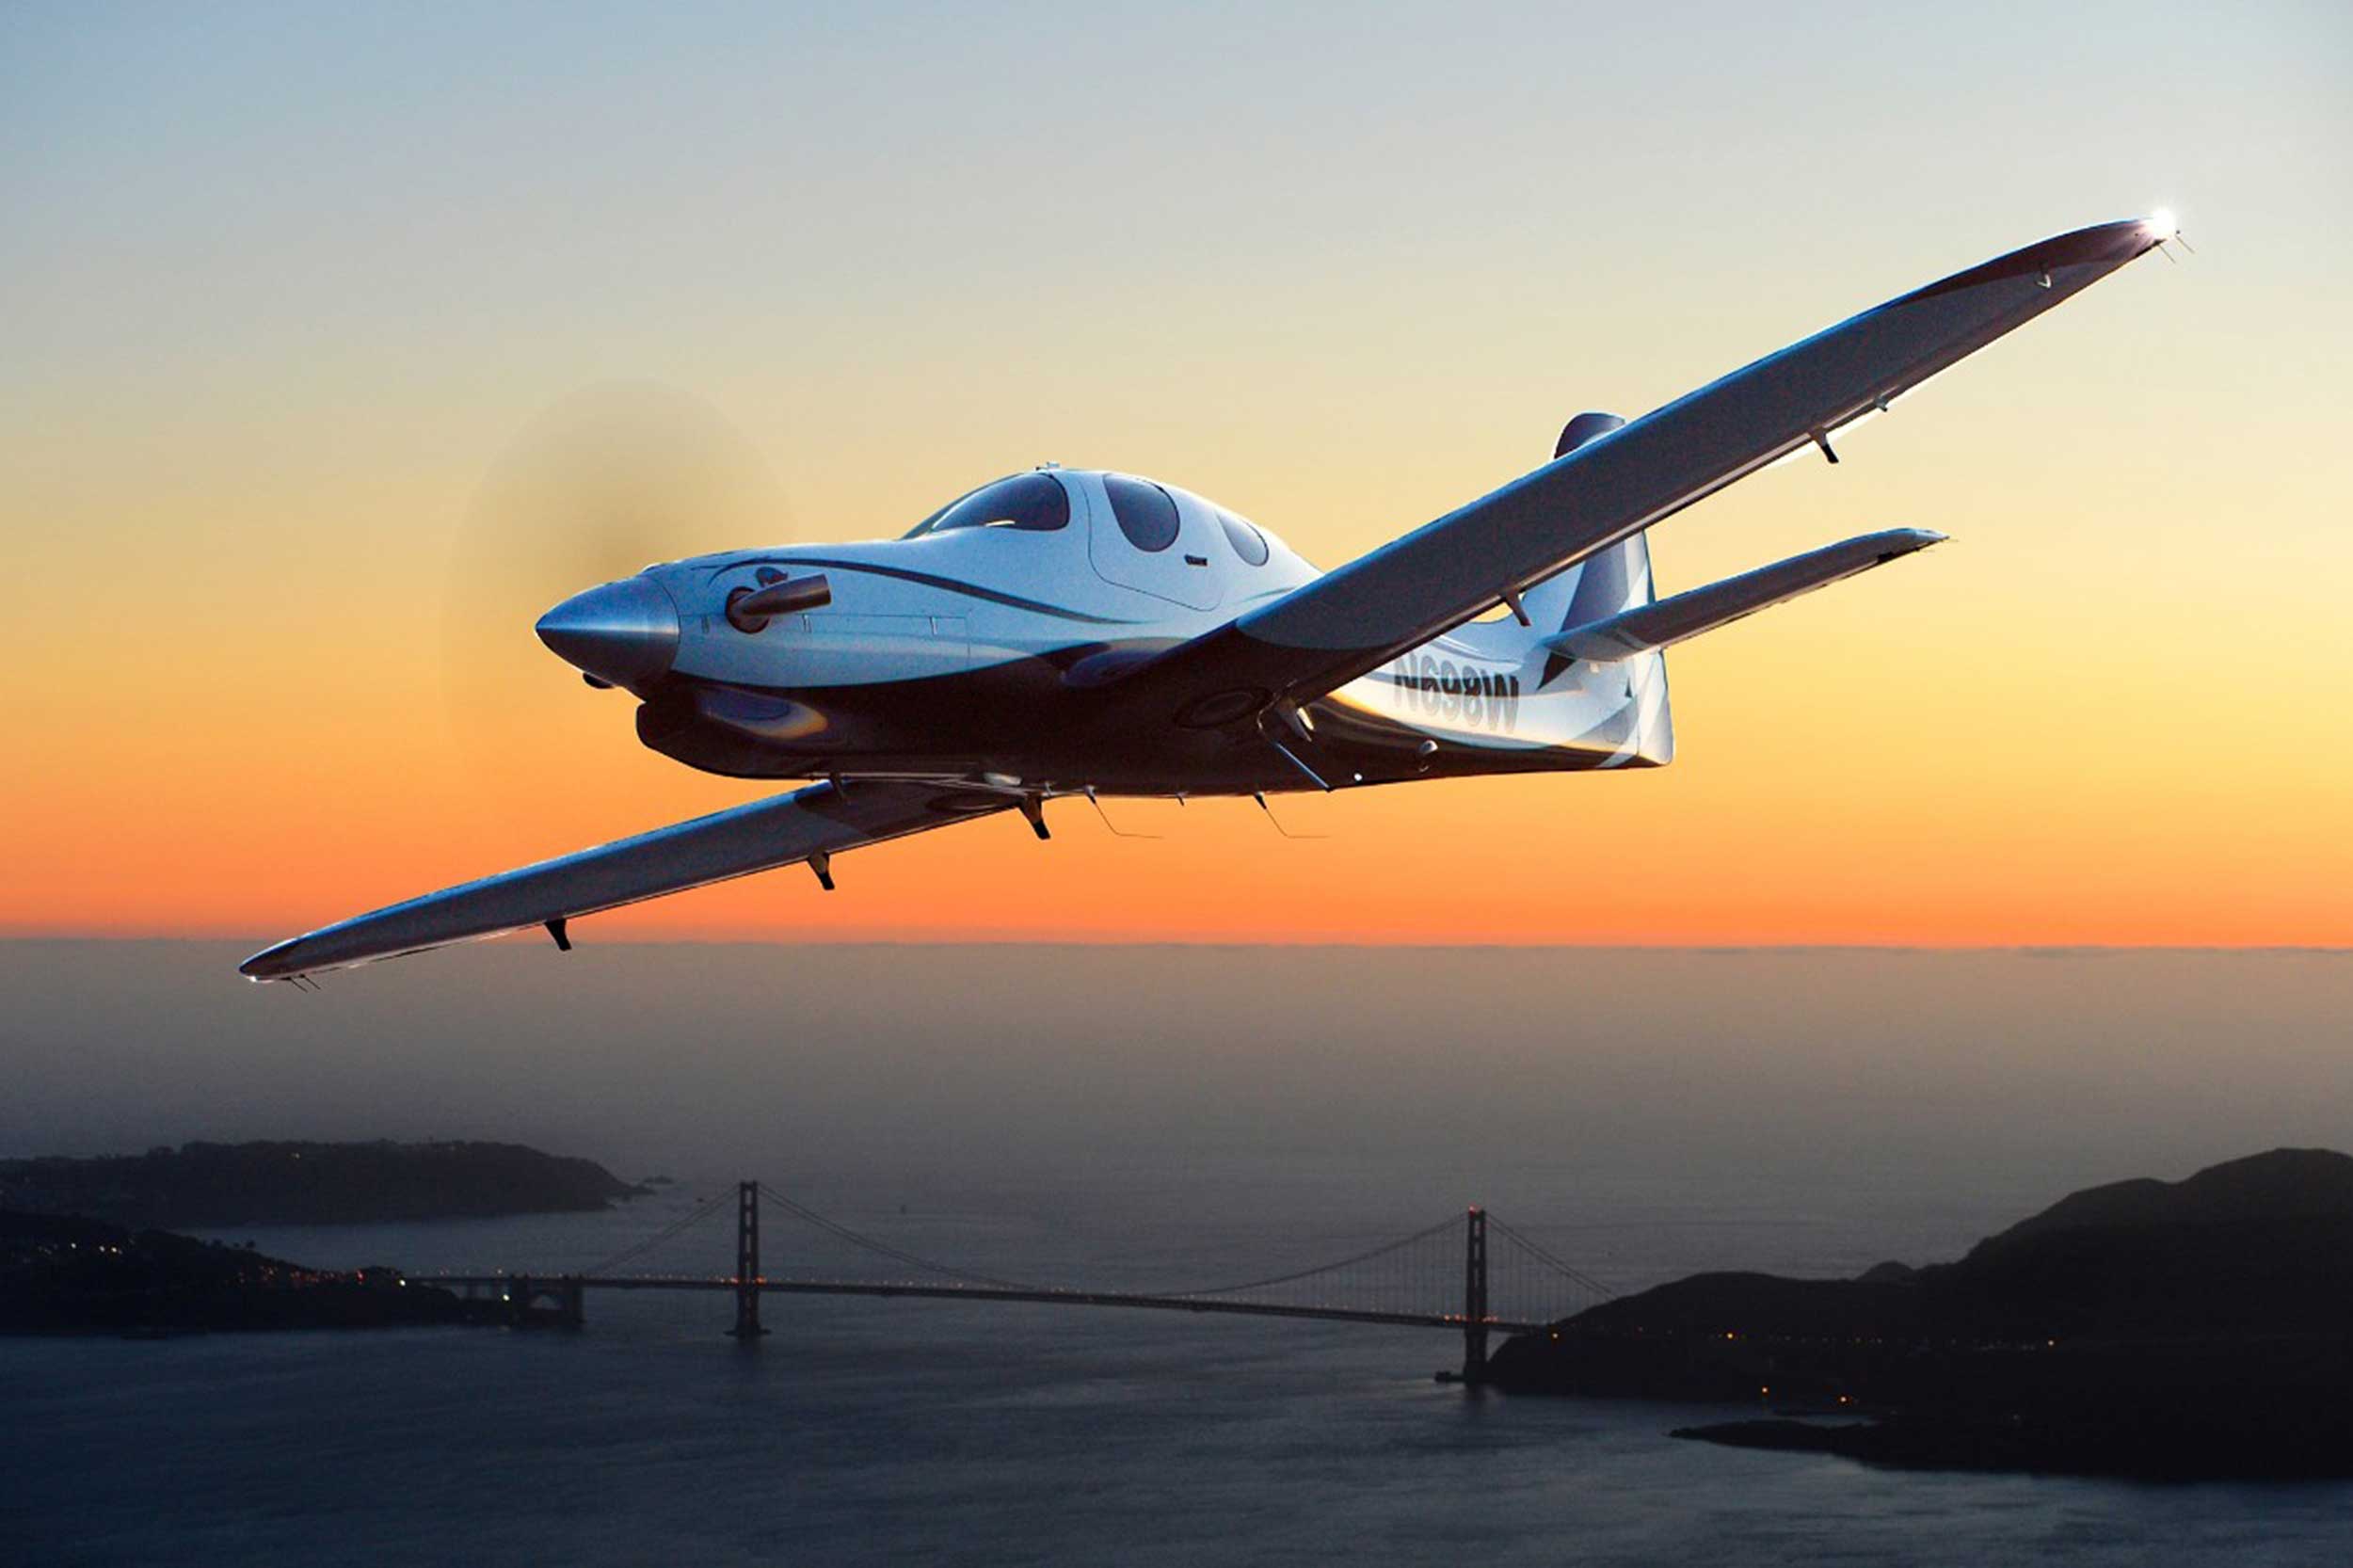 JMB's new Evo is based on the Evolution EVOT-750 kitplane